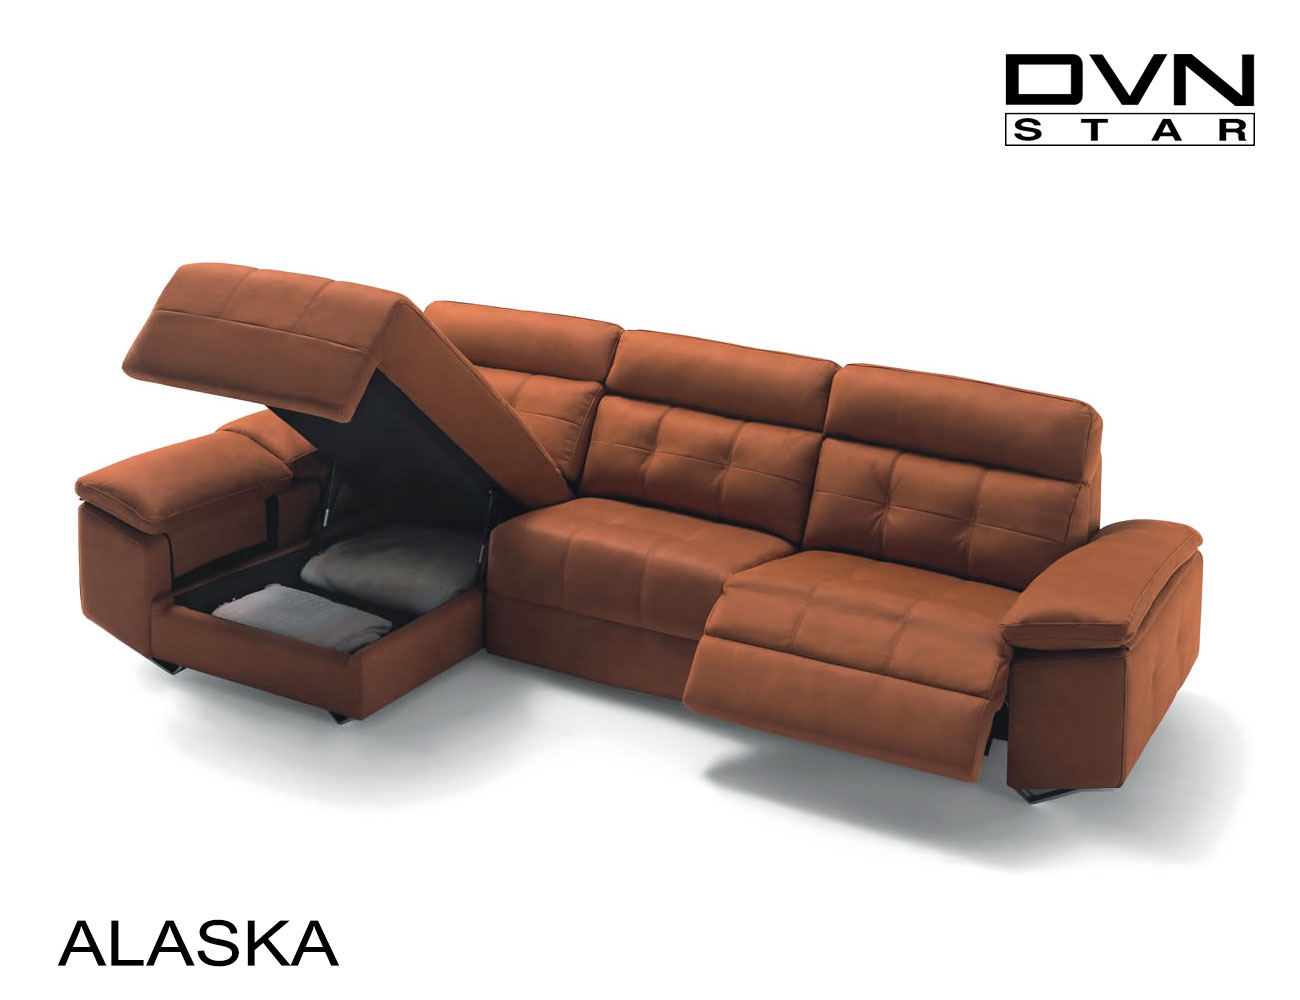 Sofa alaska divani star dvn detalle